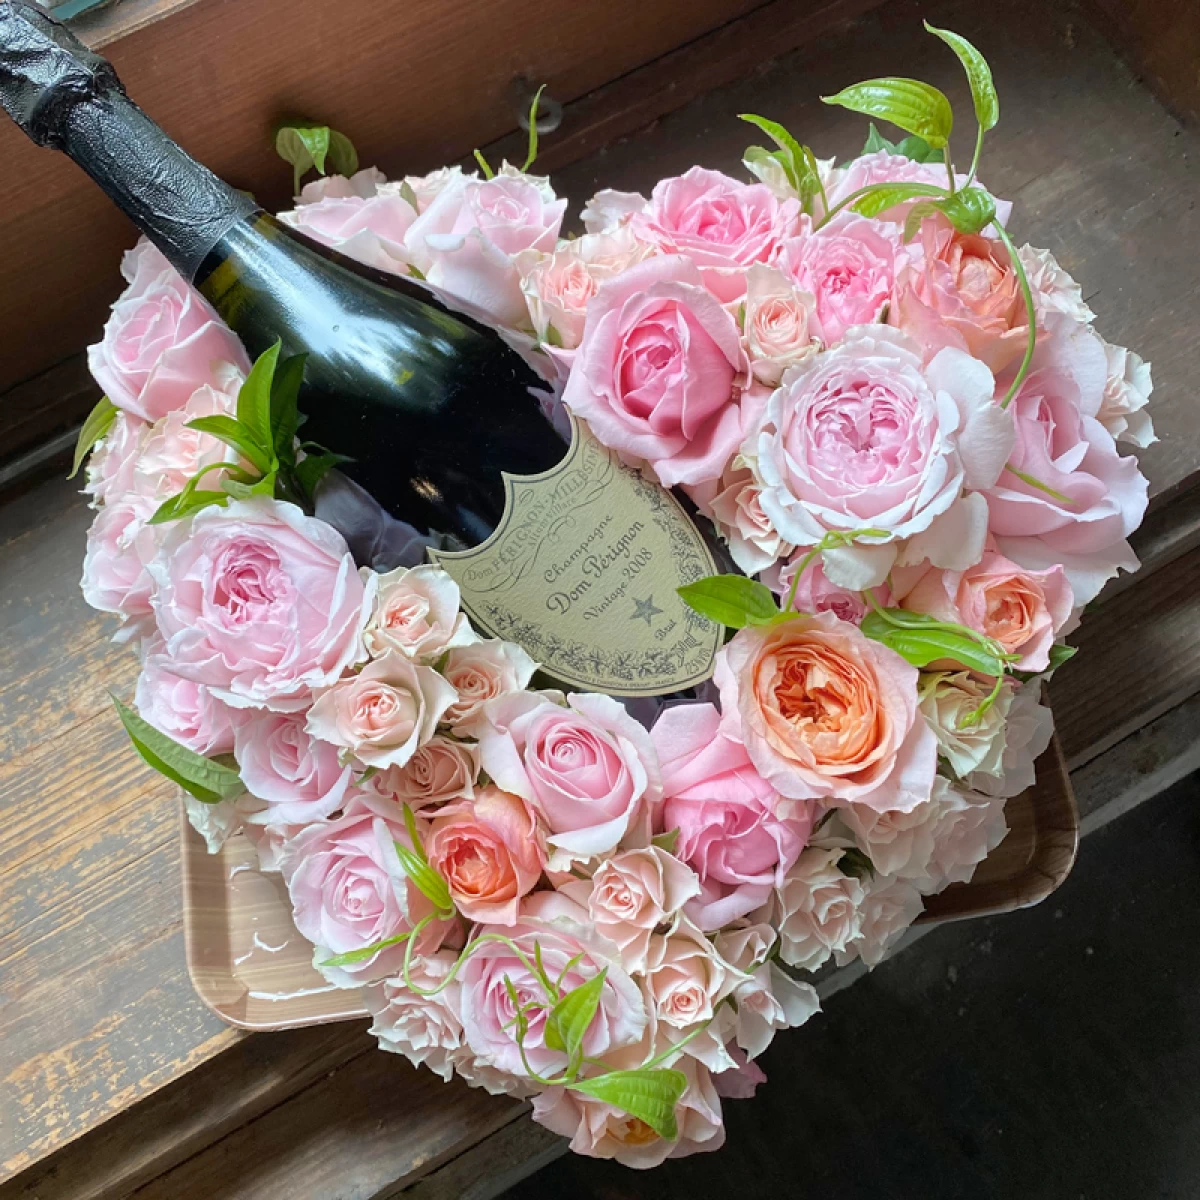 結婚祝い 記念日 誕生日プレゼントに!ドンペリとピンクのバラいっぱいのハートリース